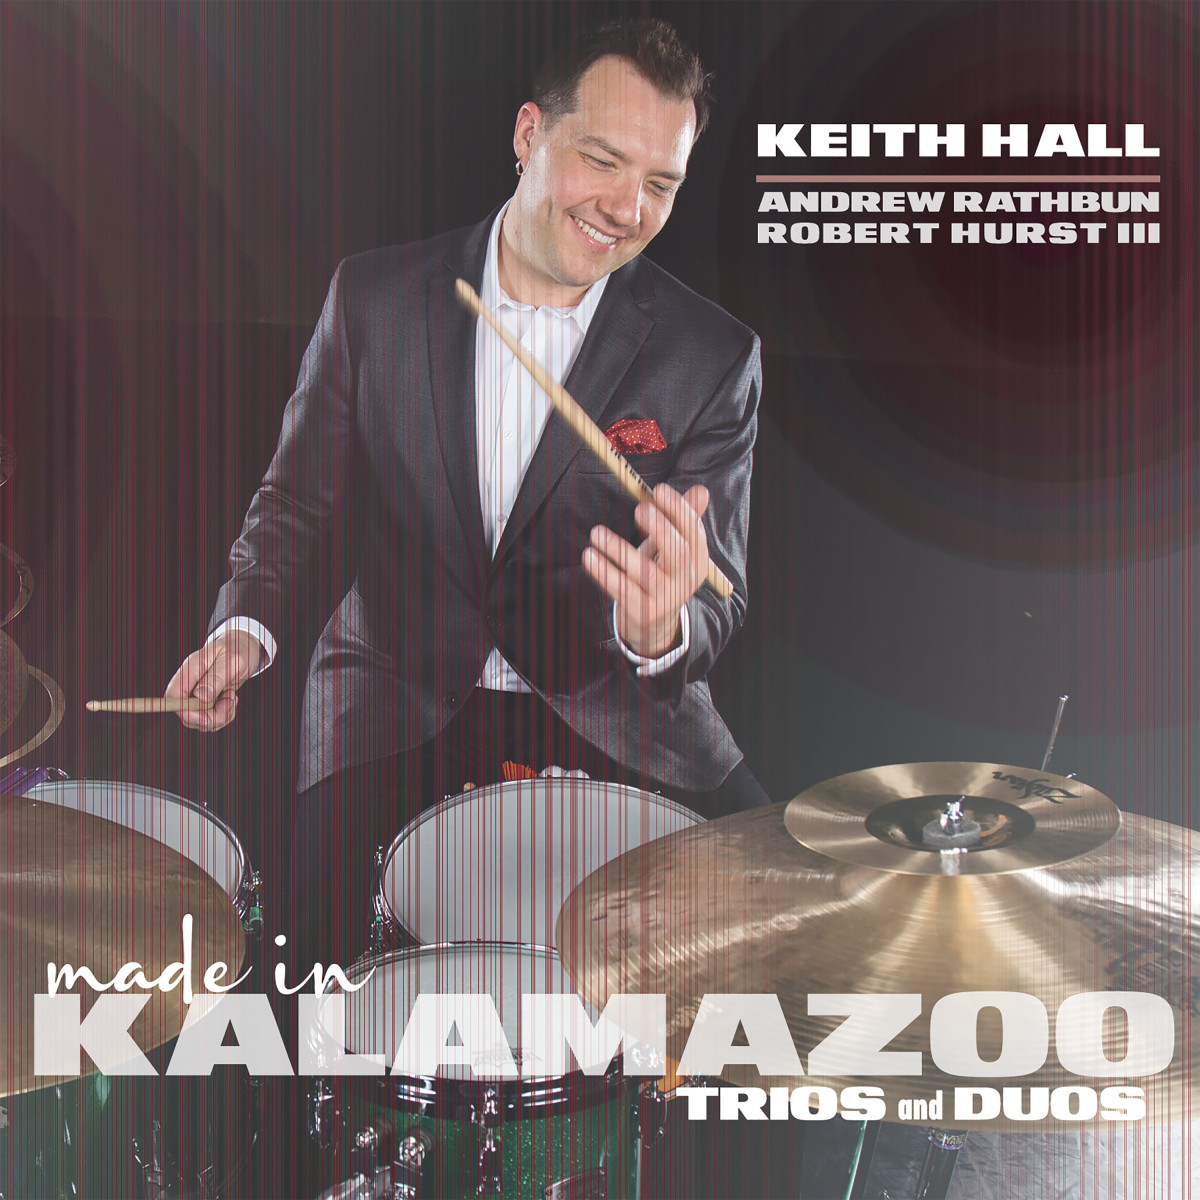 Keith Hall